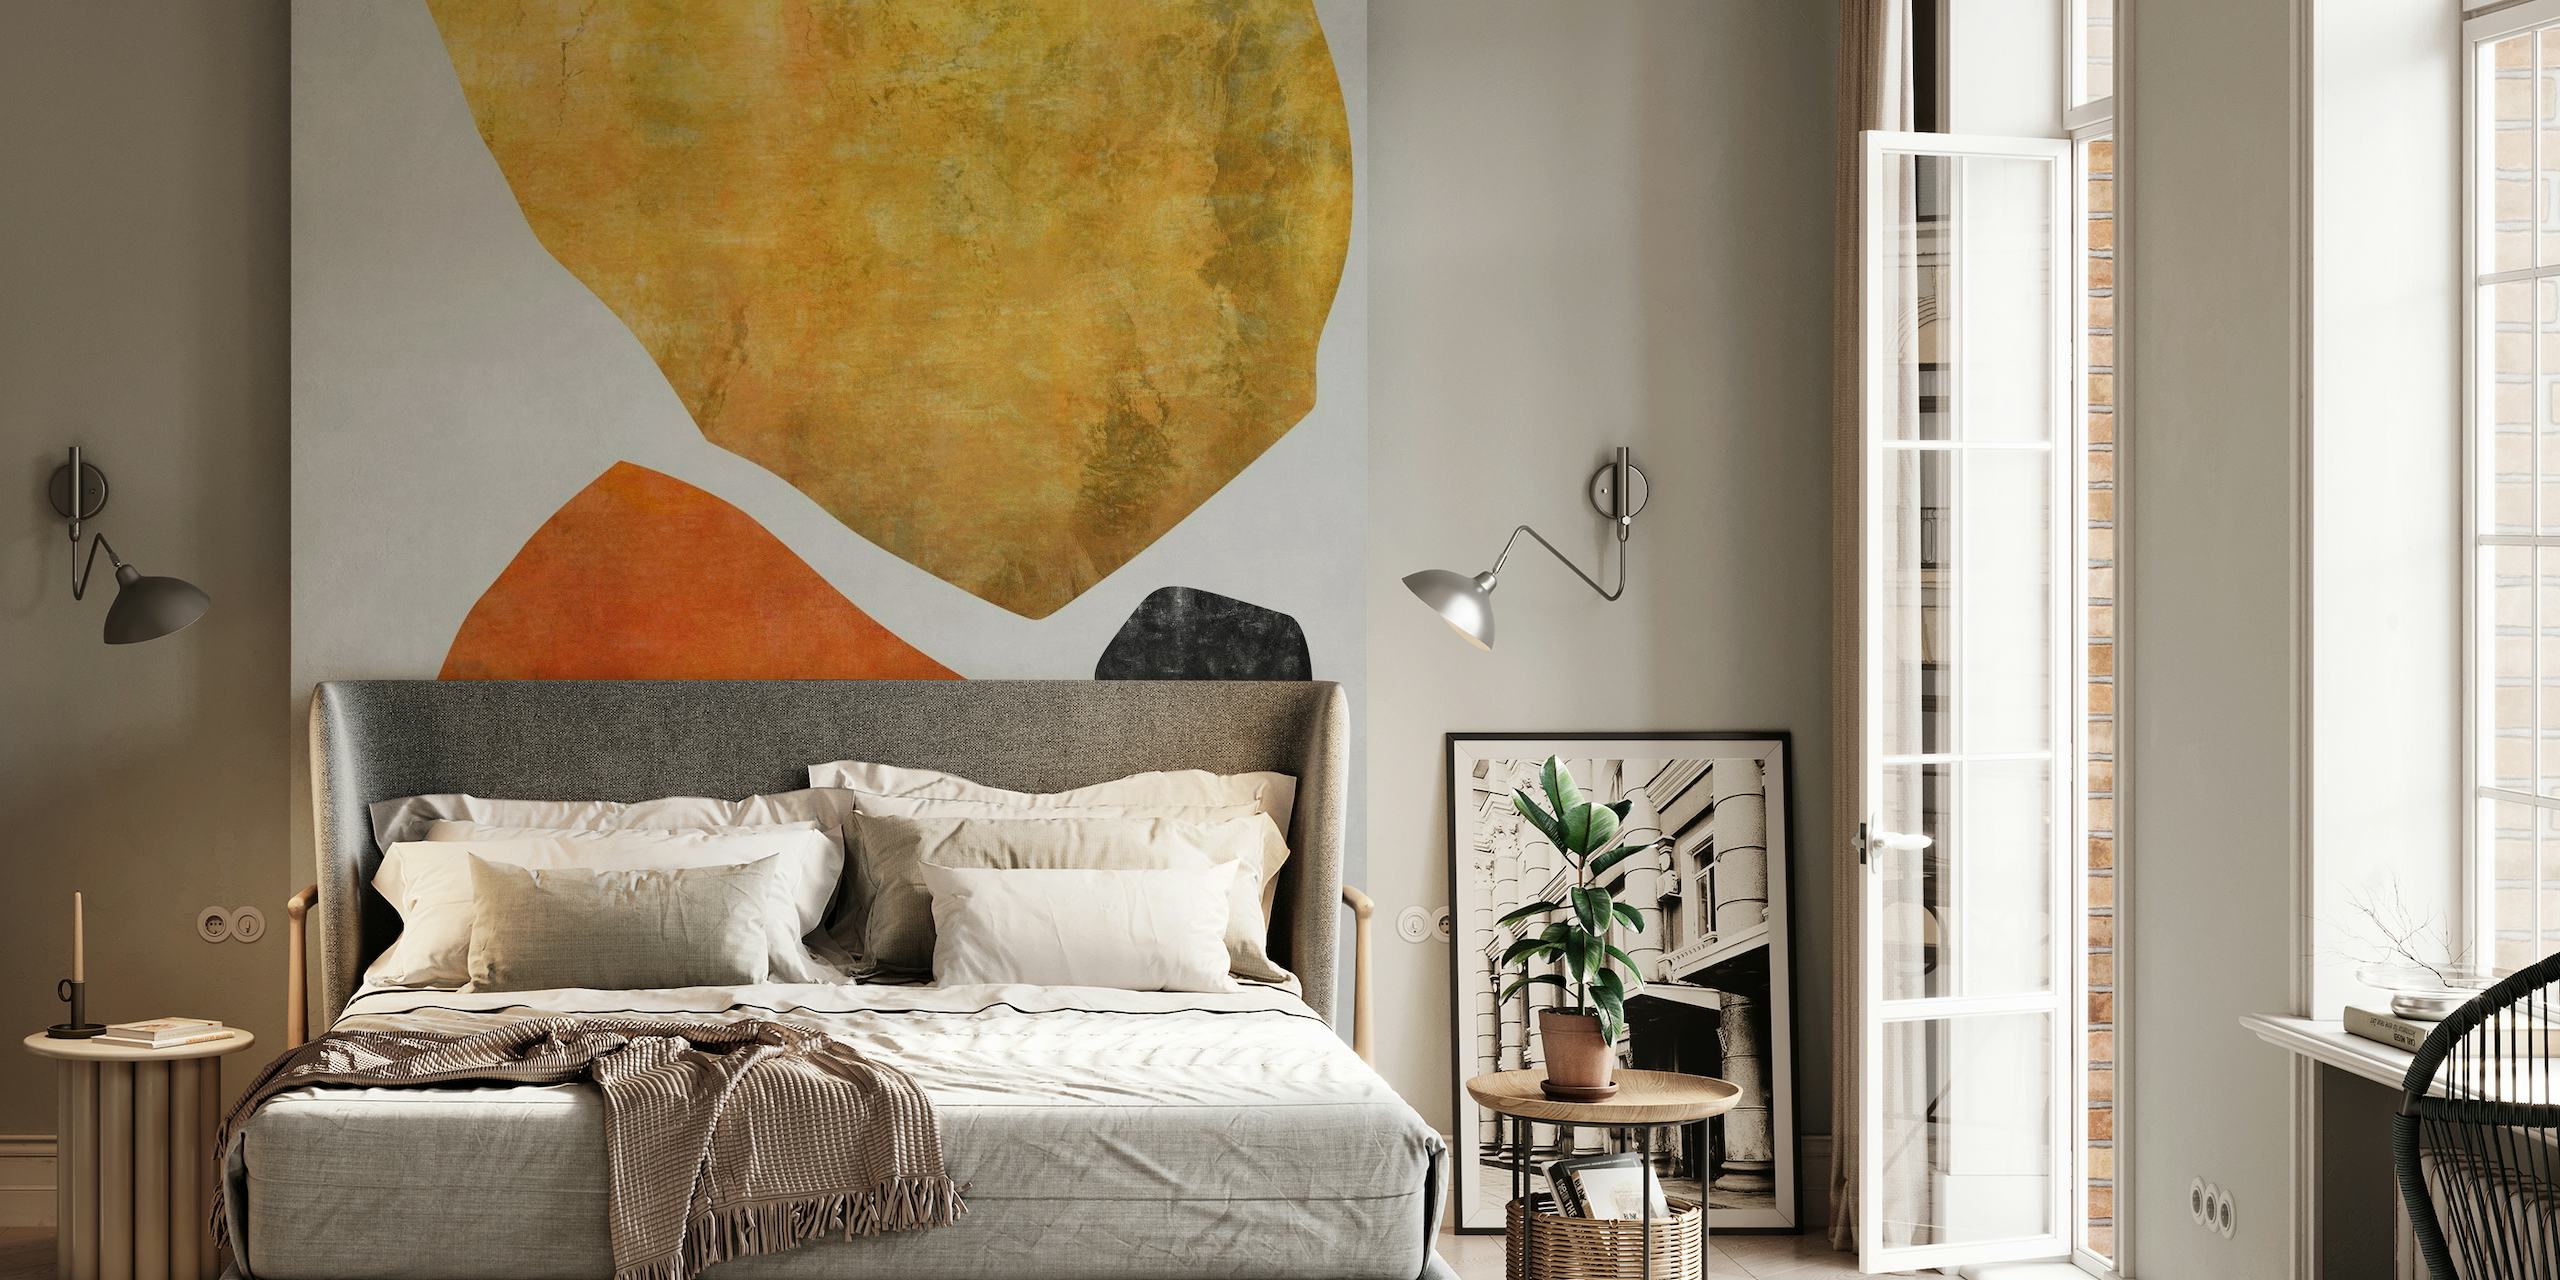 Abstract fotobehang Organic Shapes 10 met aardetinten en minimalistisch design